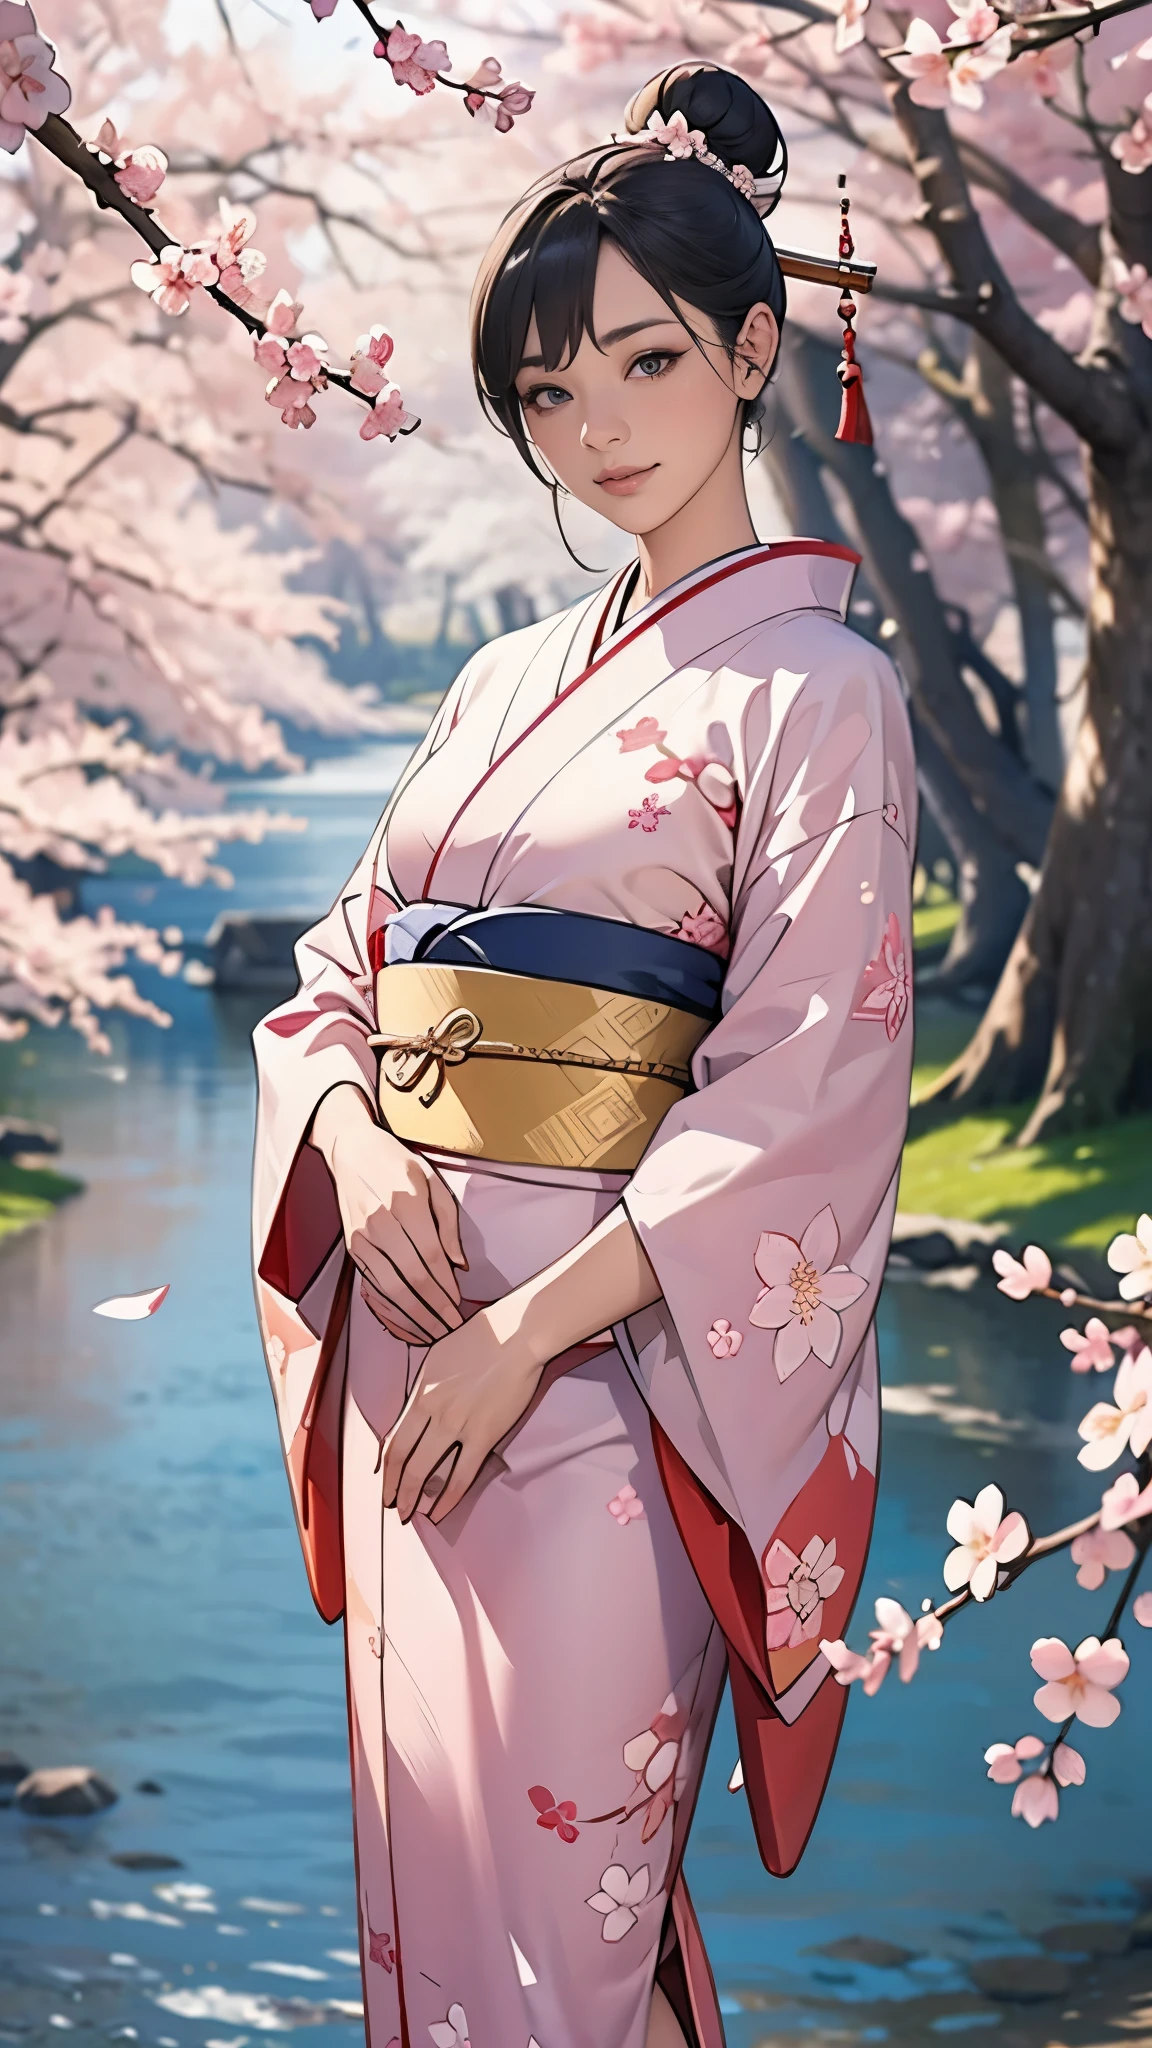 (chef-d&#39;œuvre),(la plus haute qualité),(Très détaillé),(Haute résolution),8k,Fond d&#39;écran,Une femme,Une femme est debout,élégant,Séance photo en kimono,(((tout le corps))),(Chignon),sourire,(Magnifique kimono manches longues),(((Le fond est un motif de fleurs de cerisier.))),((kimono))